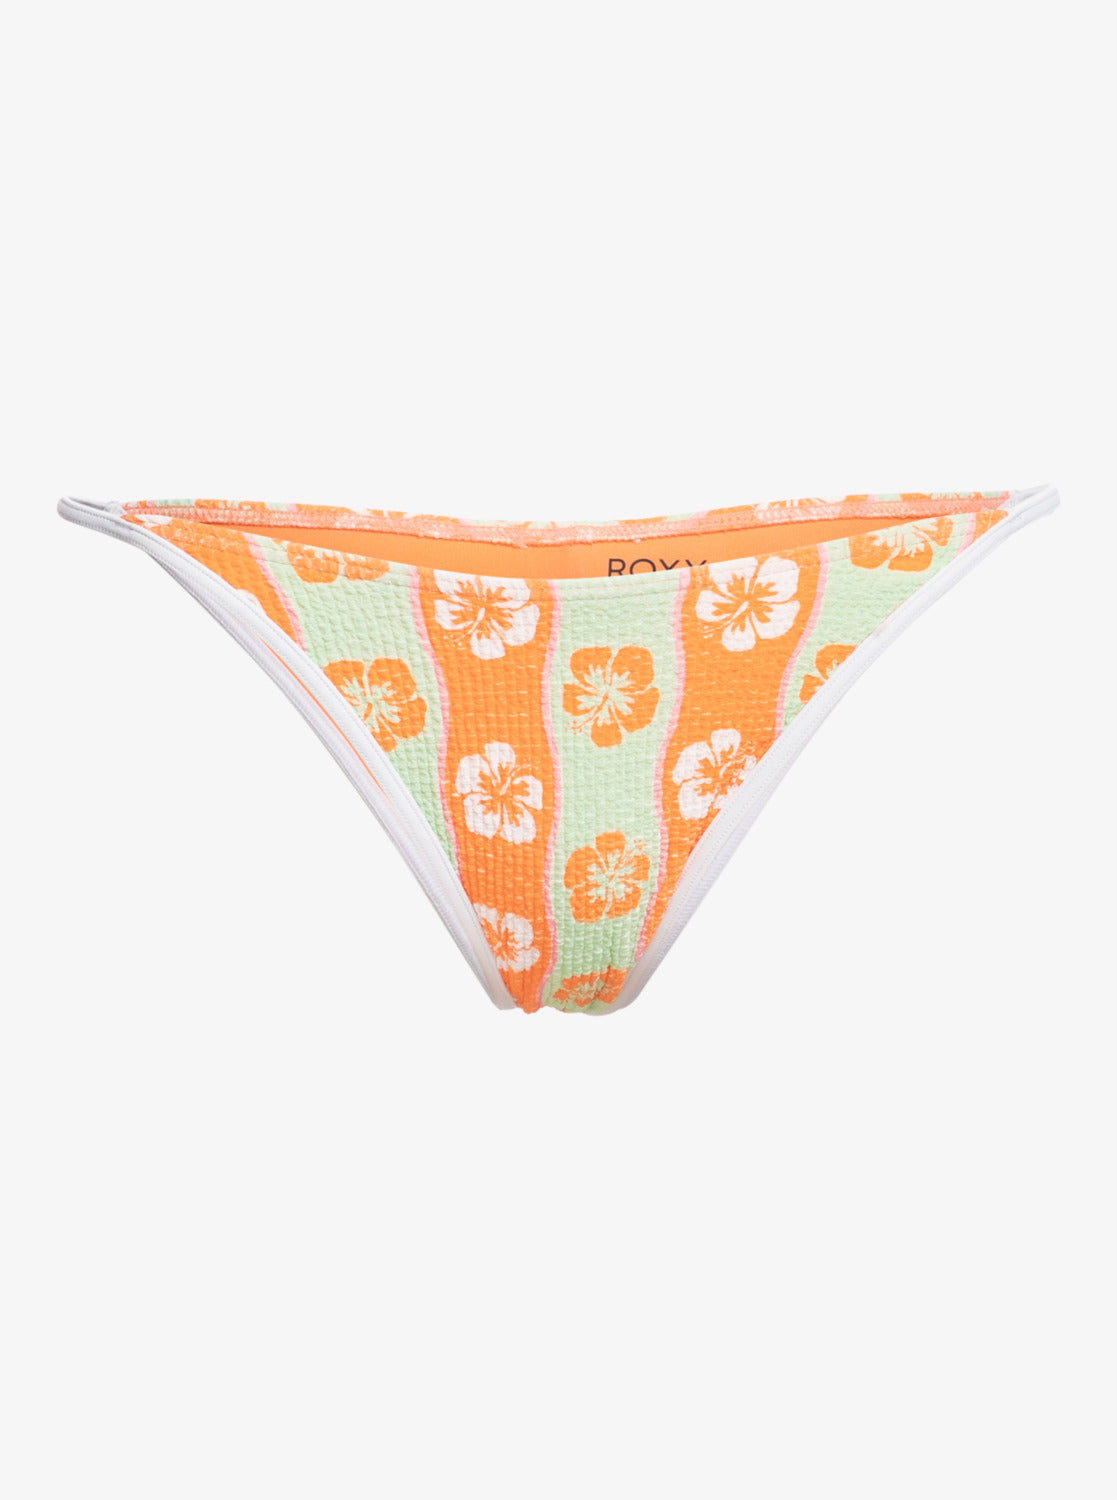 Wavy Babe Cheeky Bikini Bottoms - Ambroisia Wave Babe Small – Roxy.com